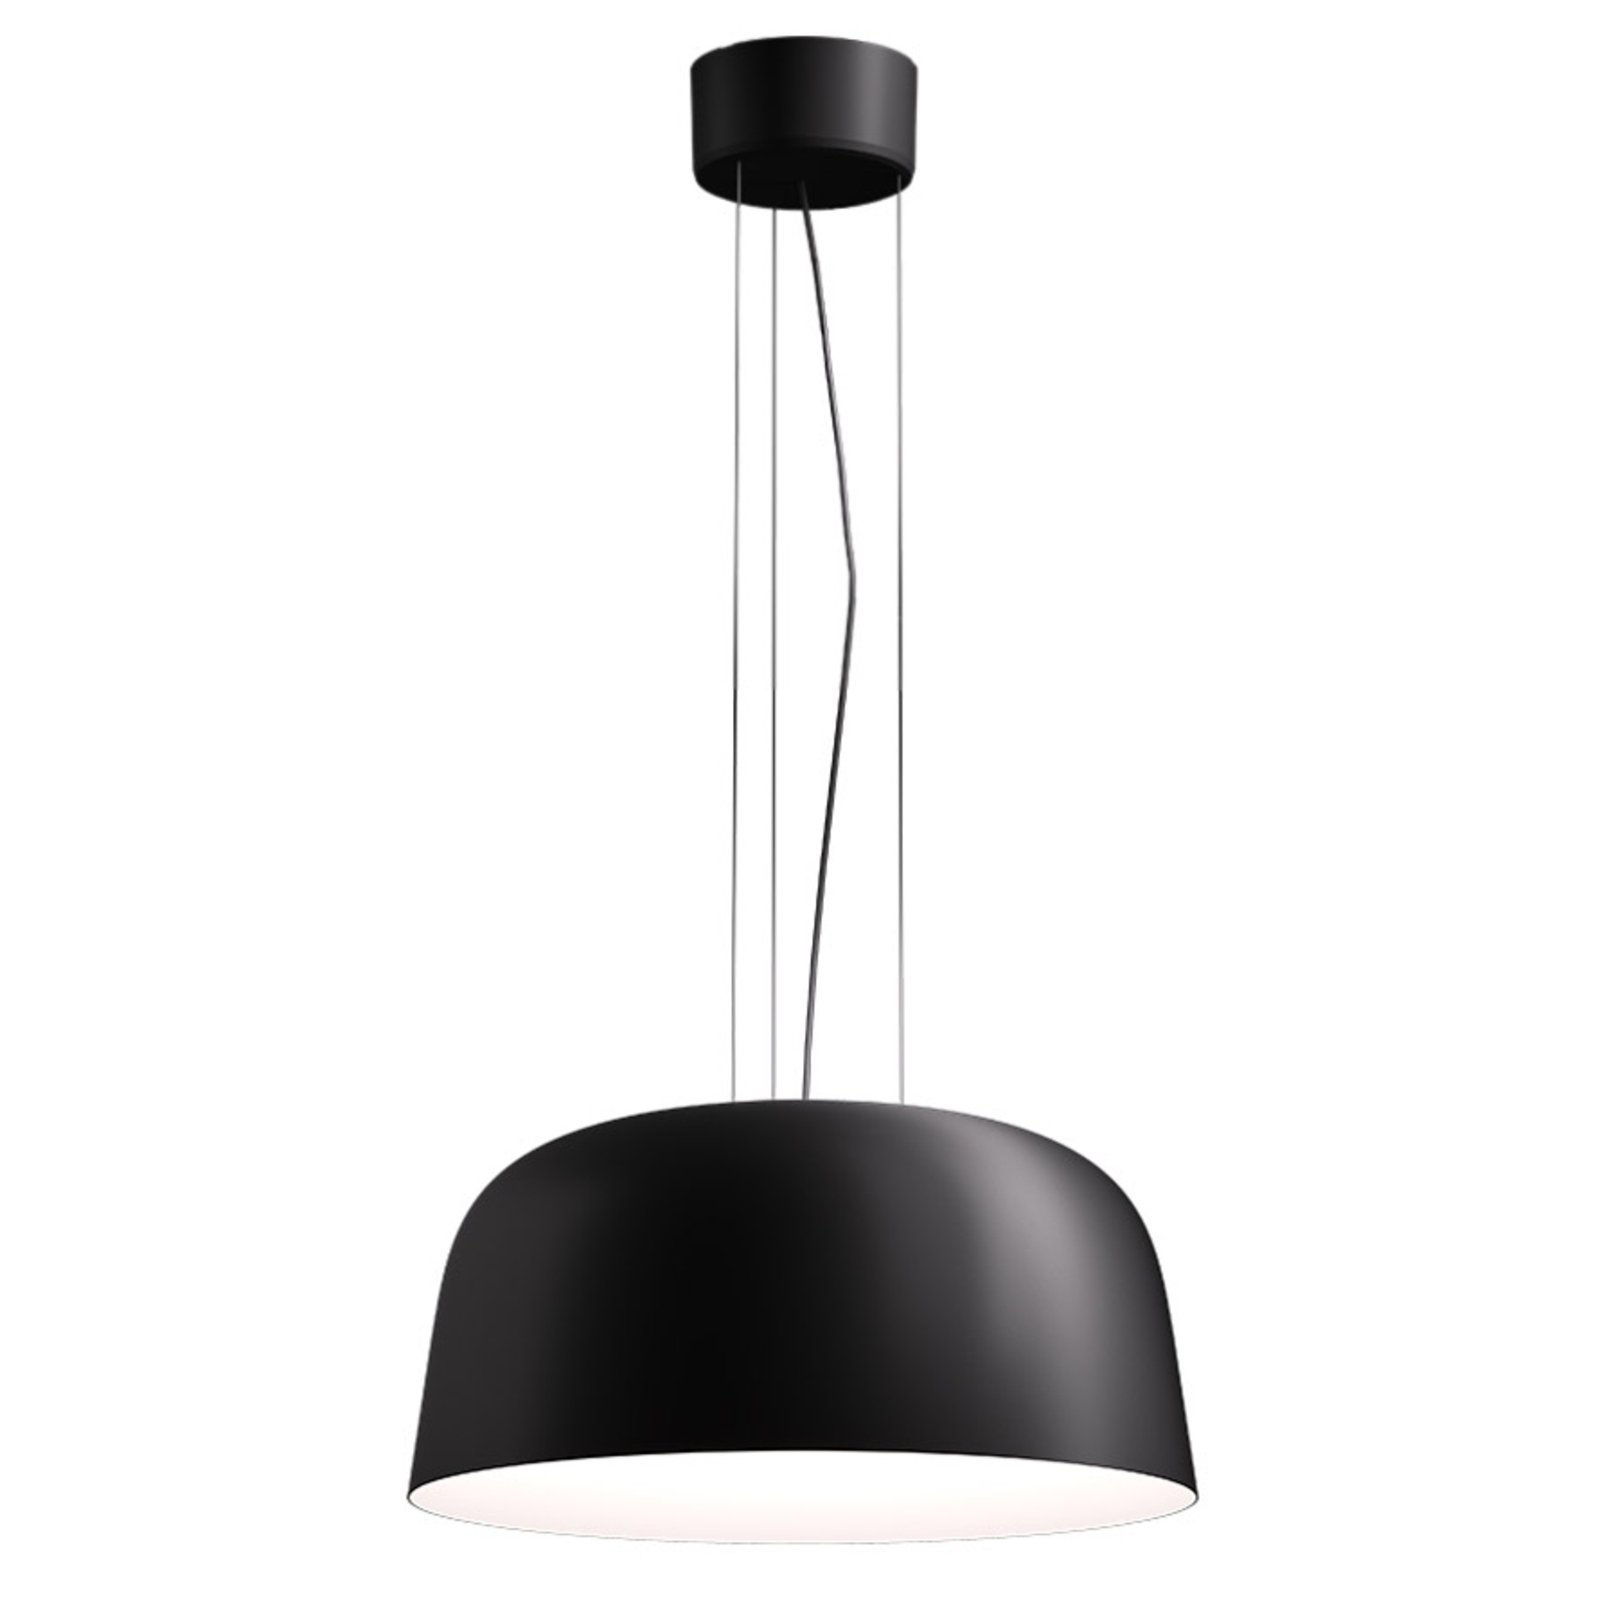 LED pakabinamas šviestuvas Sva 830 Dali Ø 50cm juodas